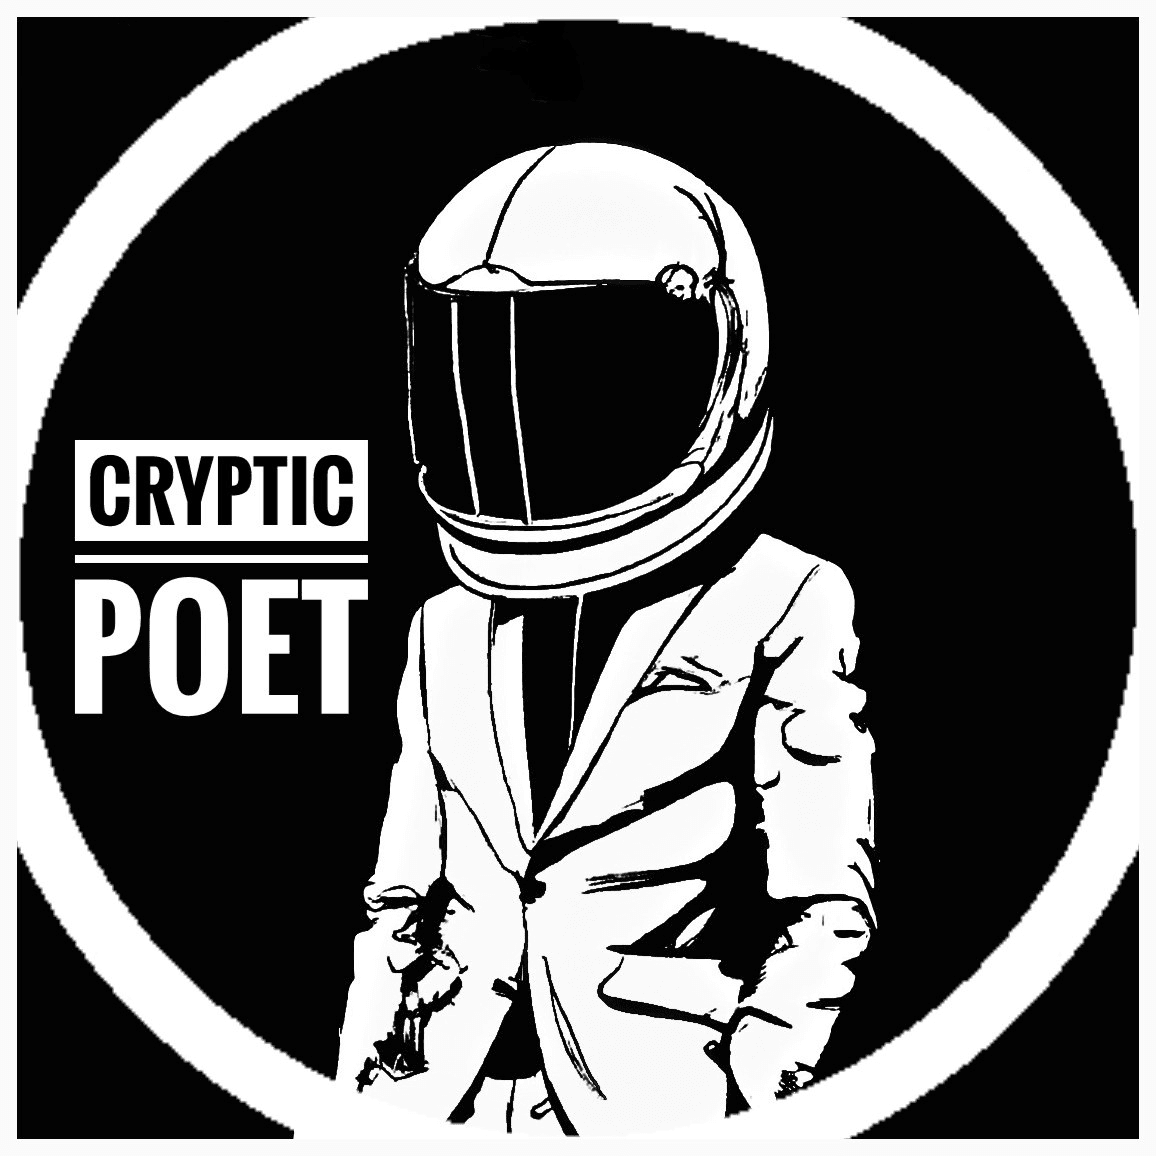 1CrypticPoet